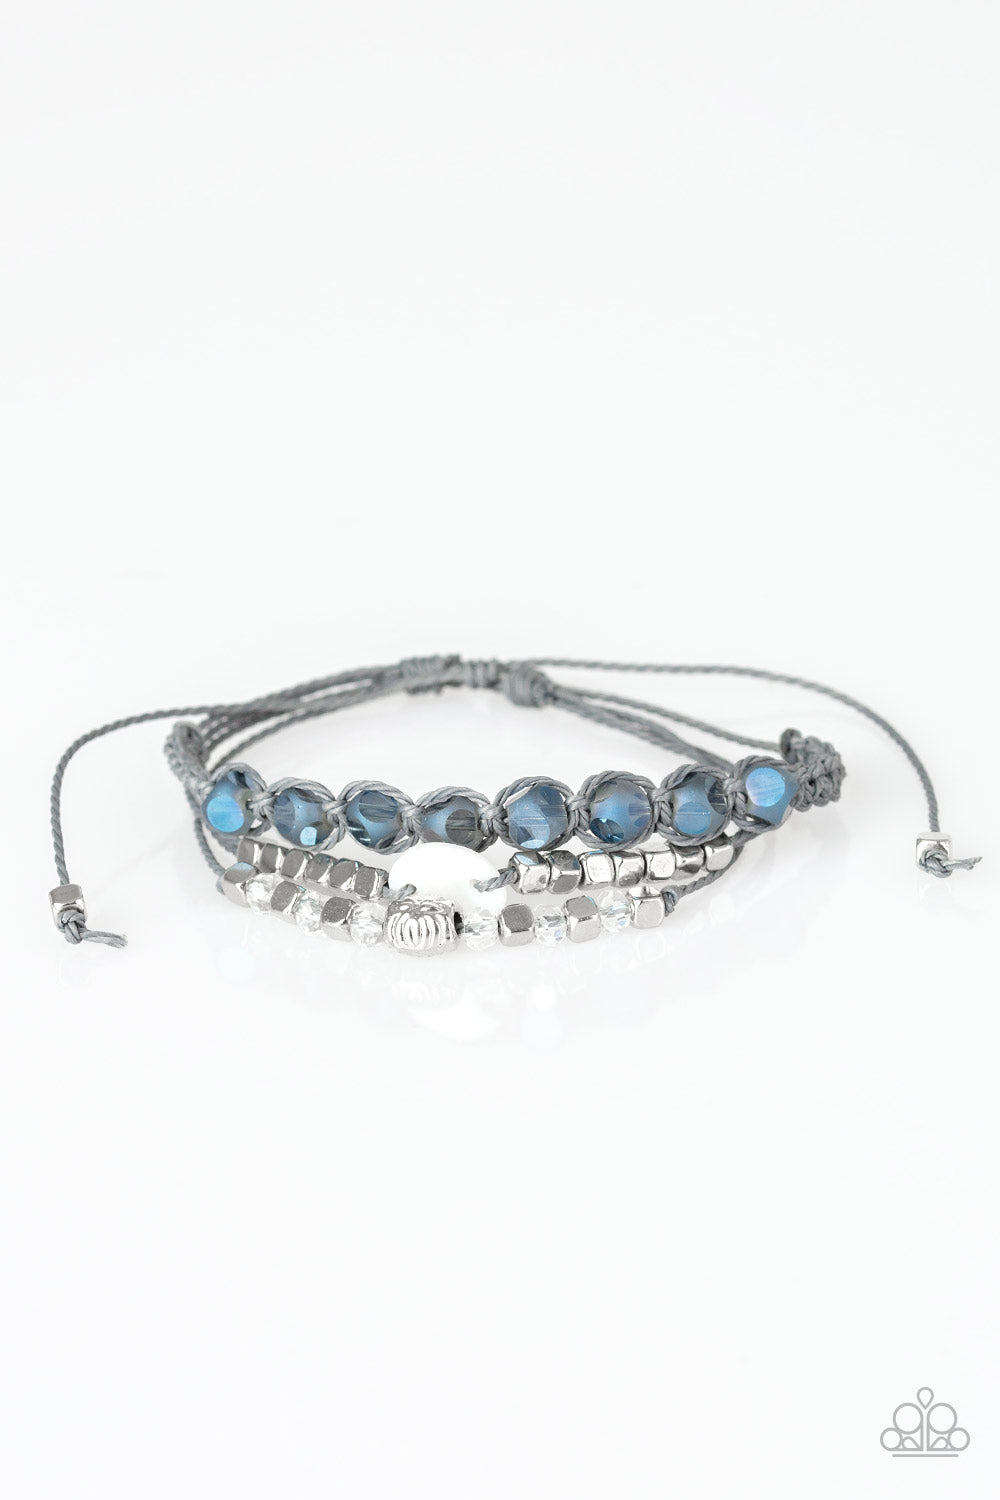 Paparazzi Trendy Tourist - Blue - Sliding Knot Bracelet - $5 Jewelry With Ashley Swint